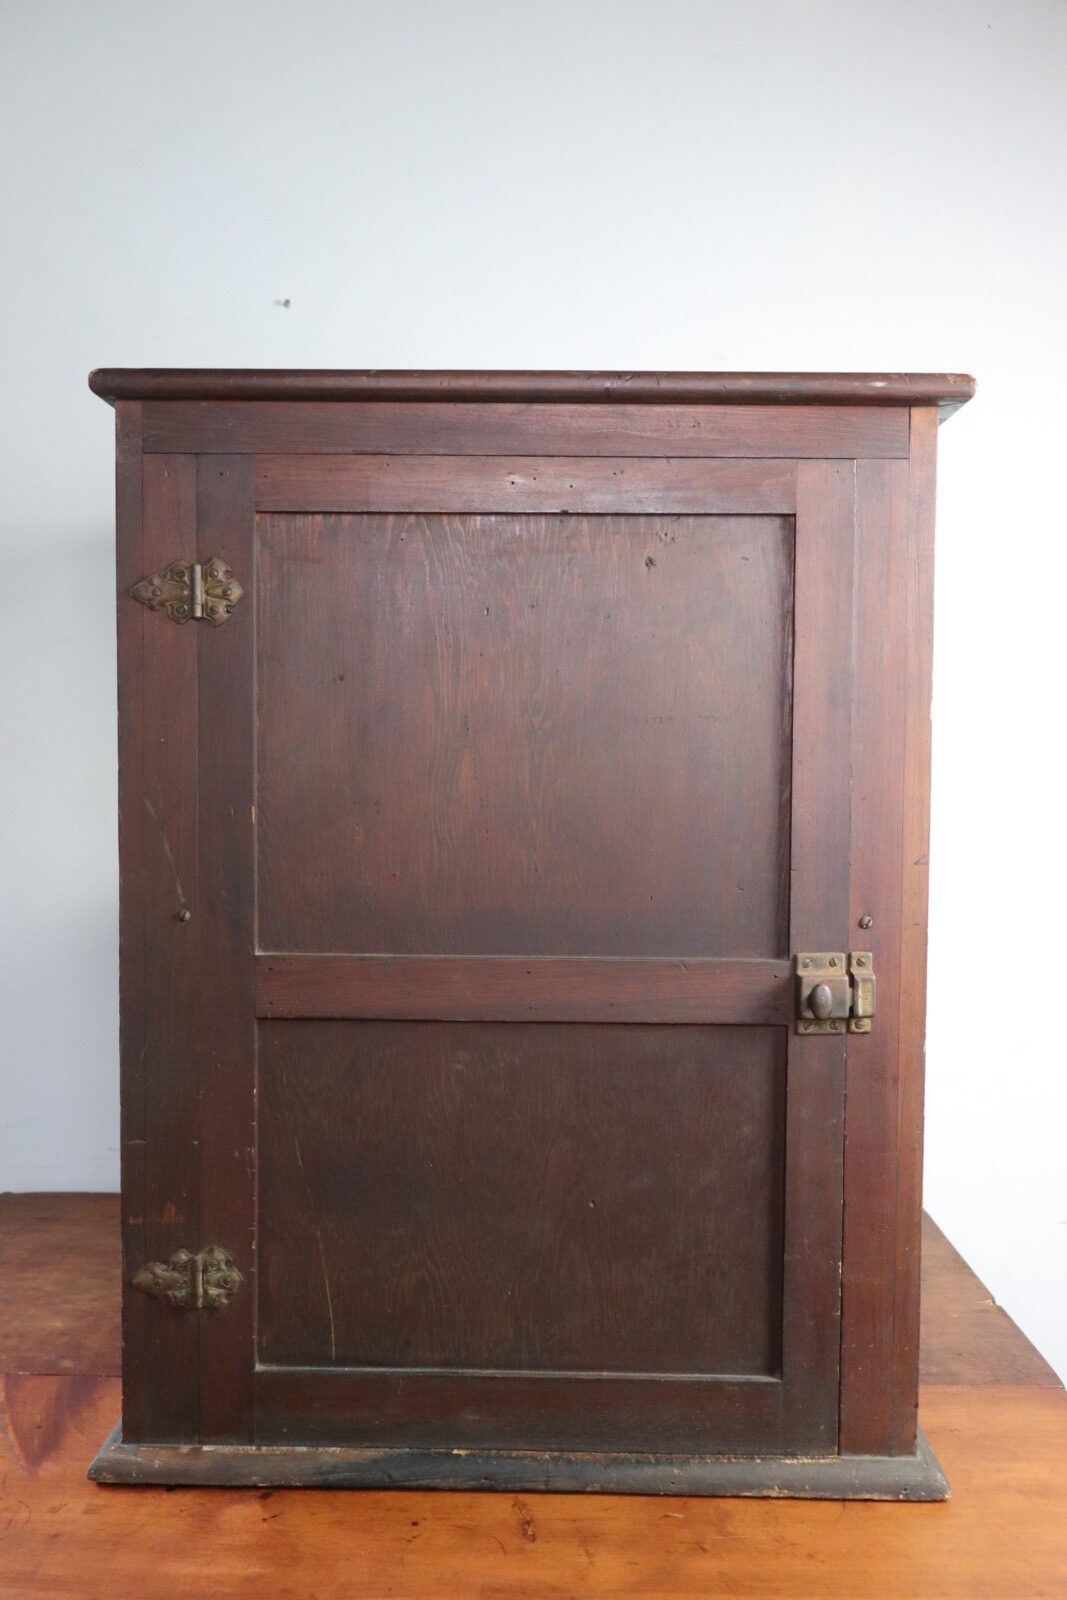 1920's,antique,ciger case,USA,oak wood,